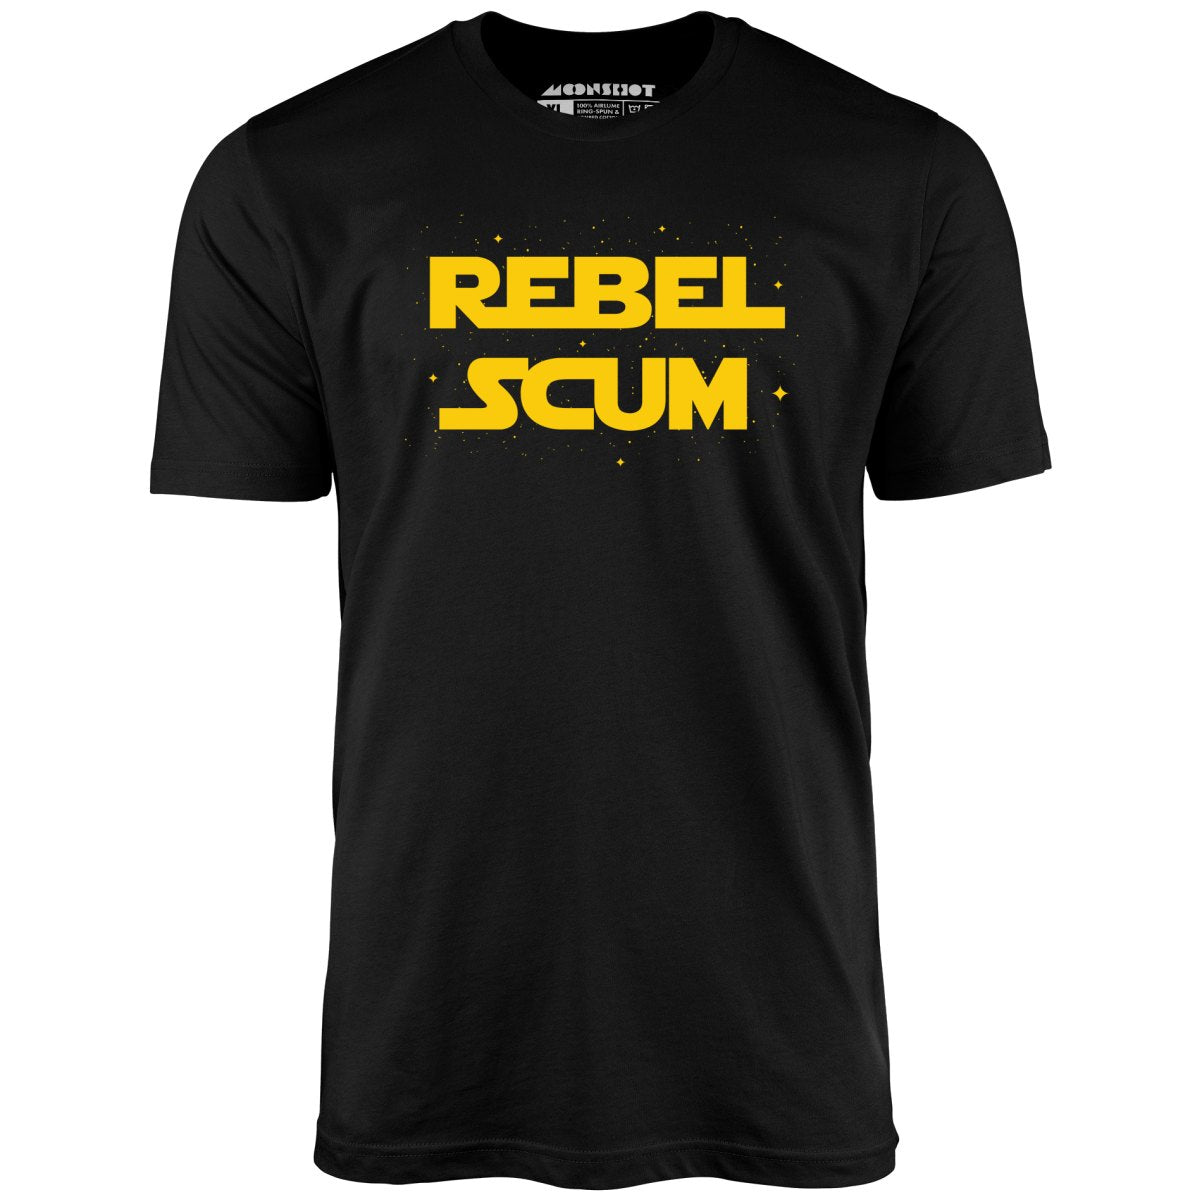 Rebel Scum - Unisex T-Shirt